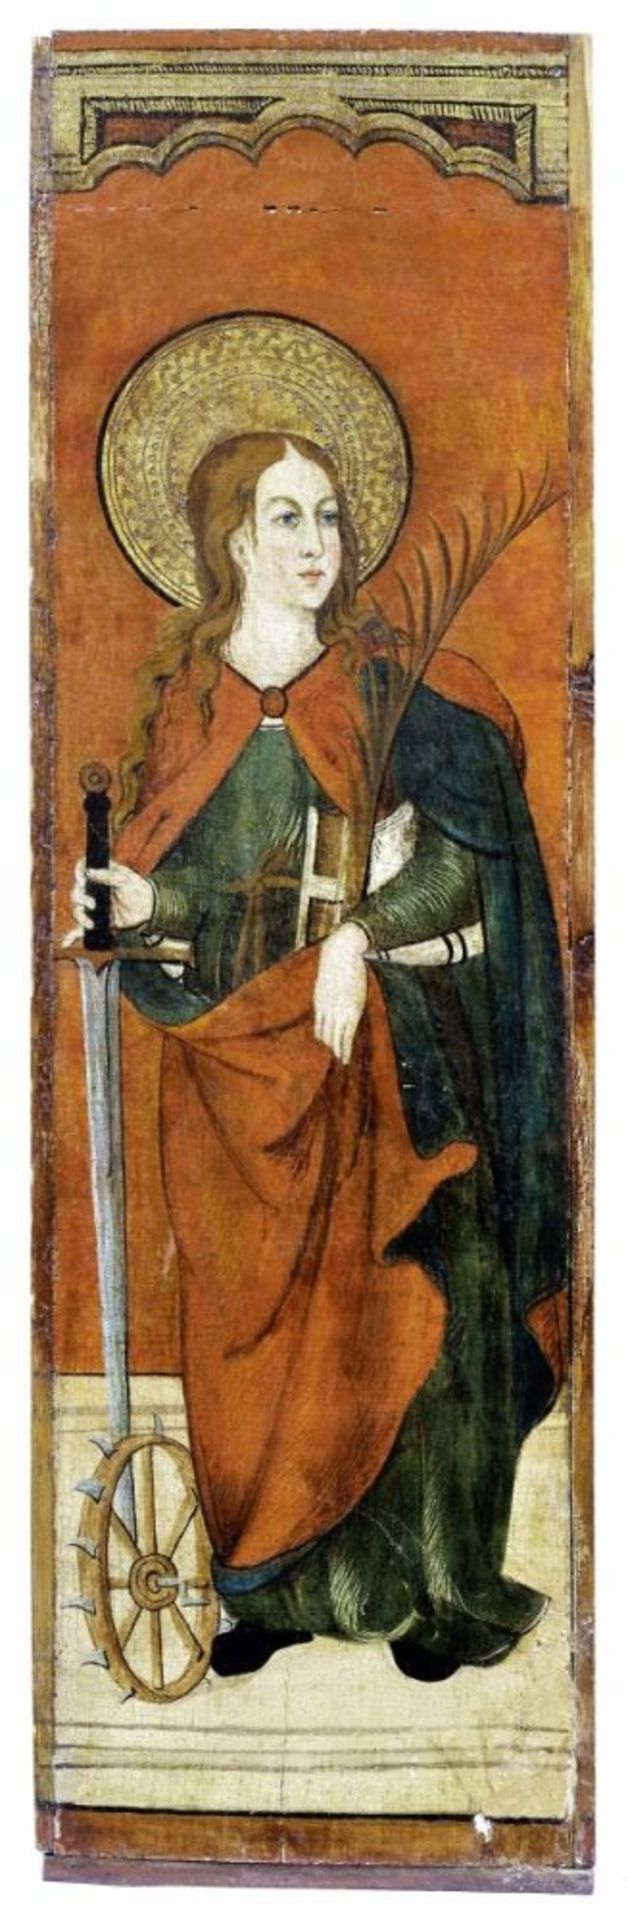 Gotisches Tafelbild mit der heiligen Katharina, Schwäbischer Meister, um 1500